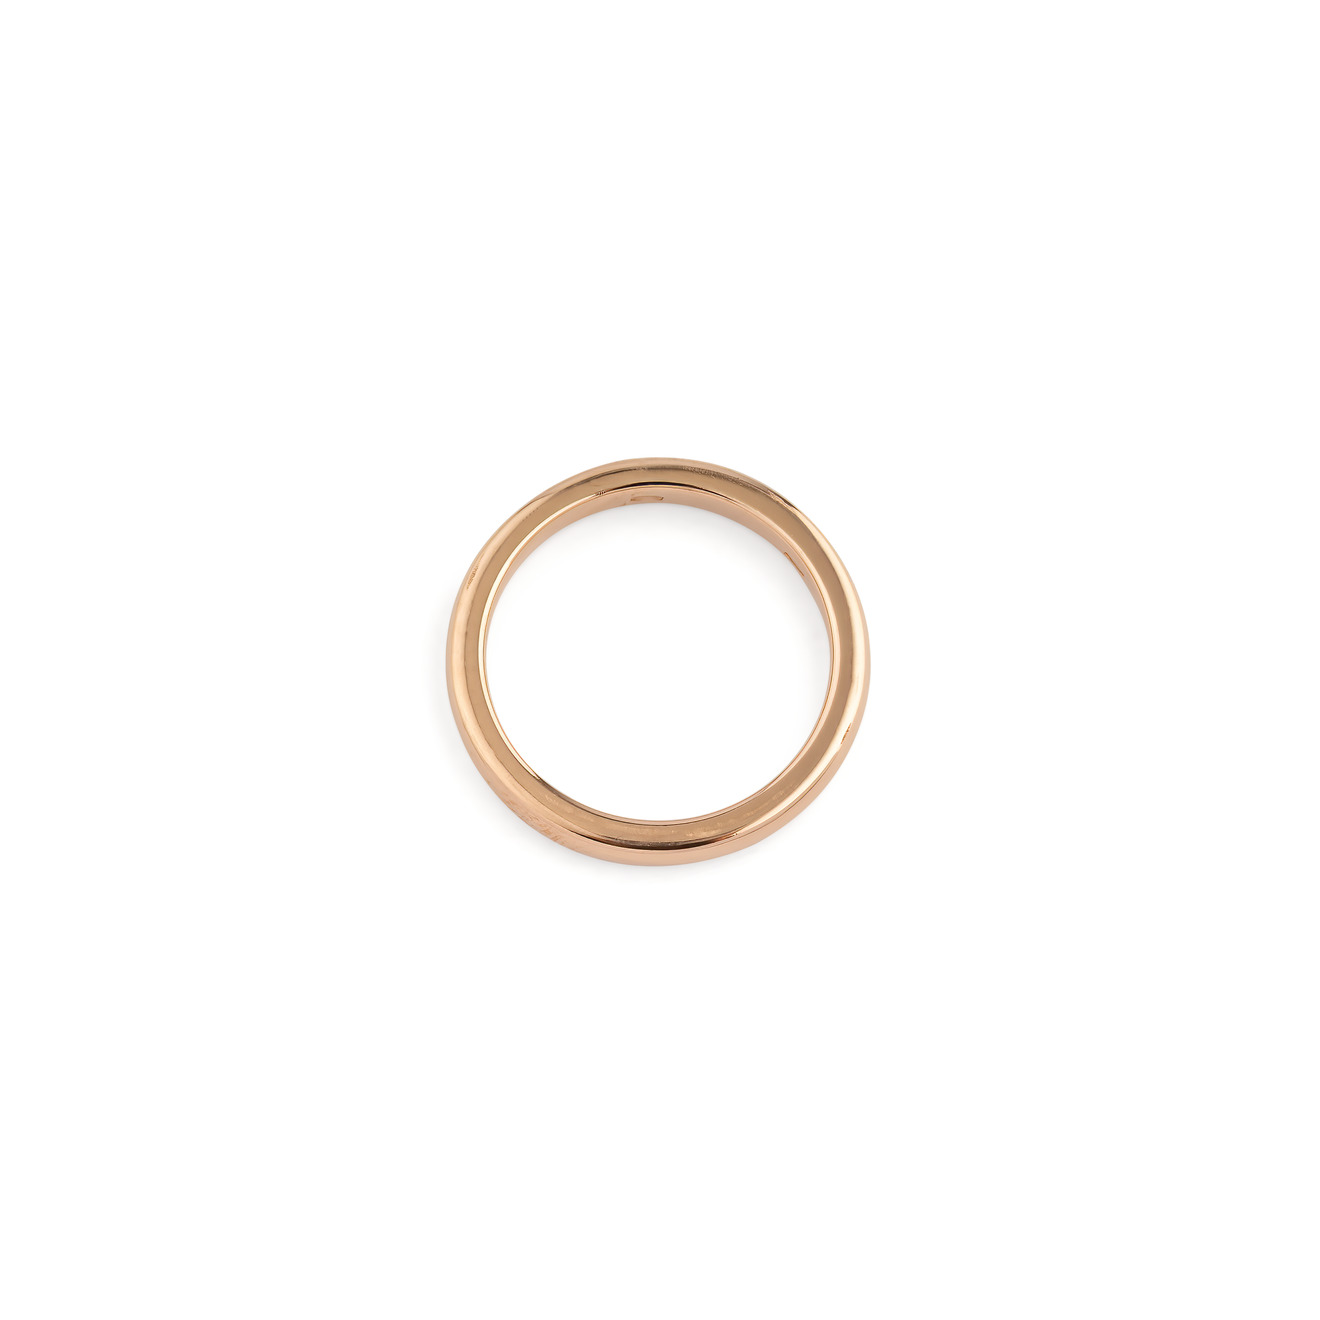 Vertigo Jewellery Lab Фаланговое кольцо из серебра ESSENTIALS, покрытое розовым золотом vertigo jewellery lab фаланговое кольцо из серебра essentials покрытое розовым золотом